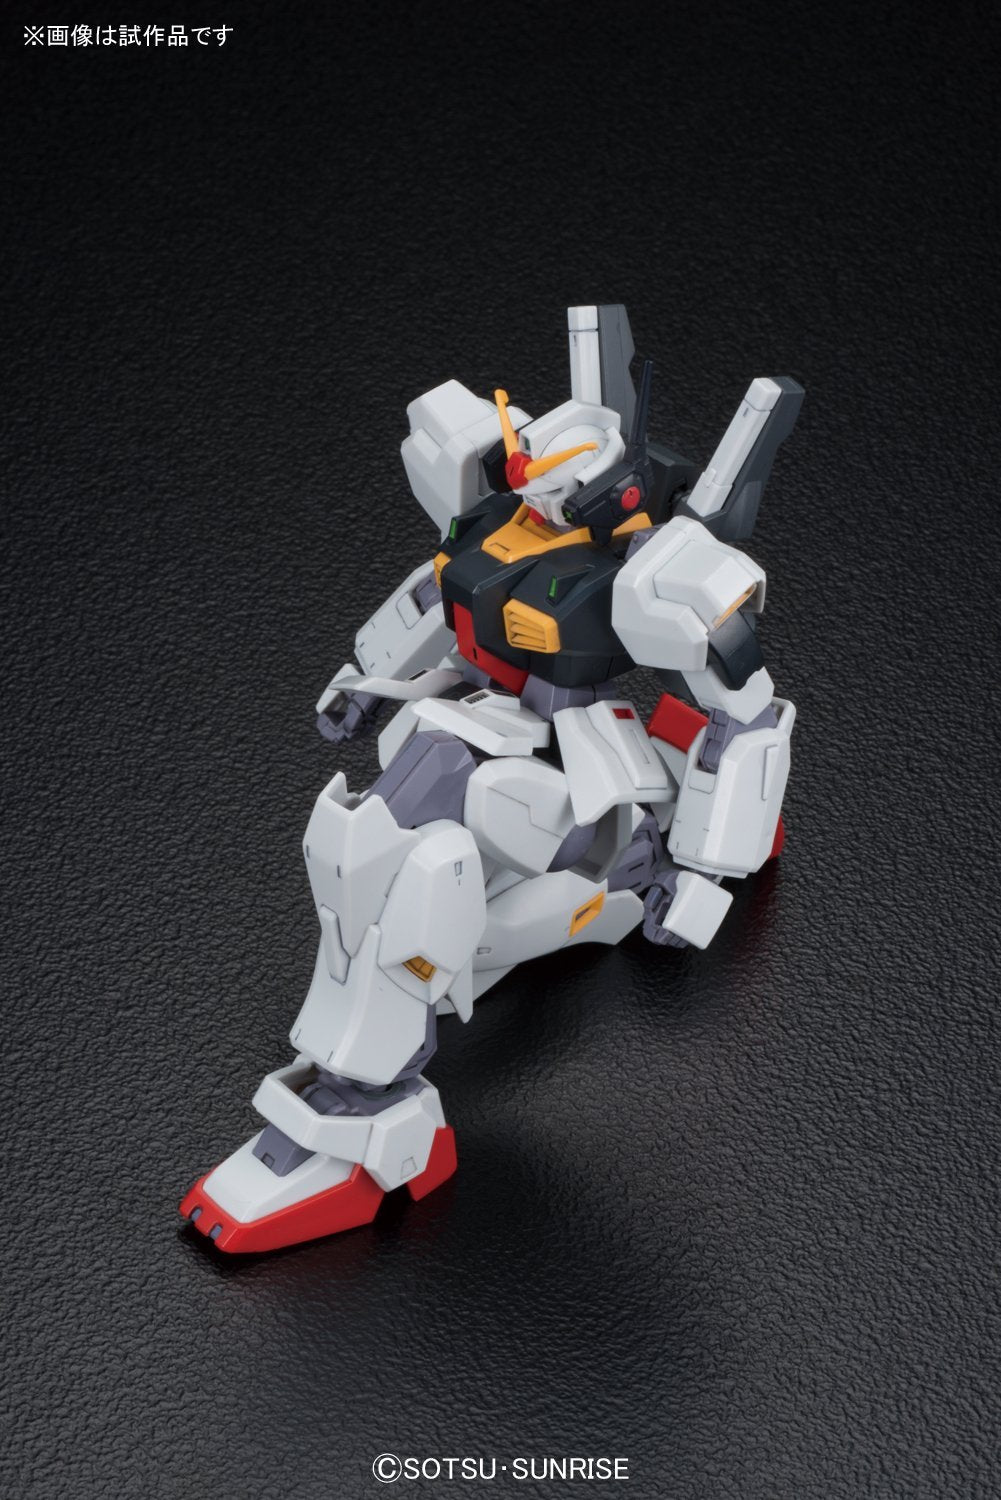 RX-178 Gundam Mk II (A.E.U.G) 5059168